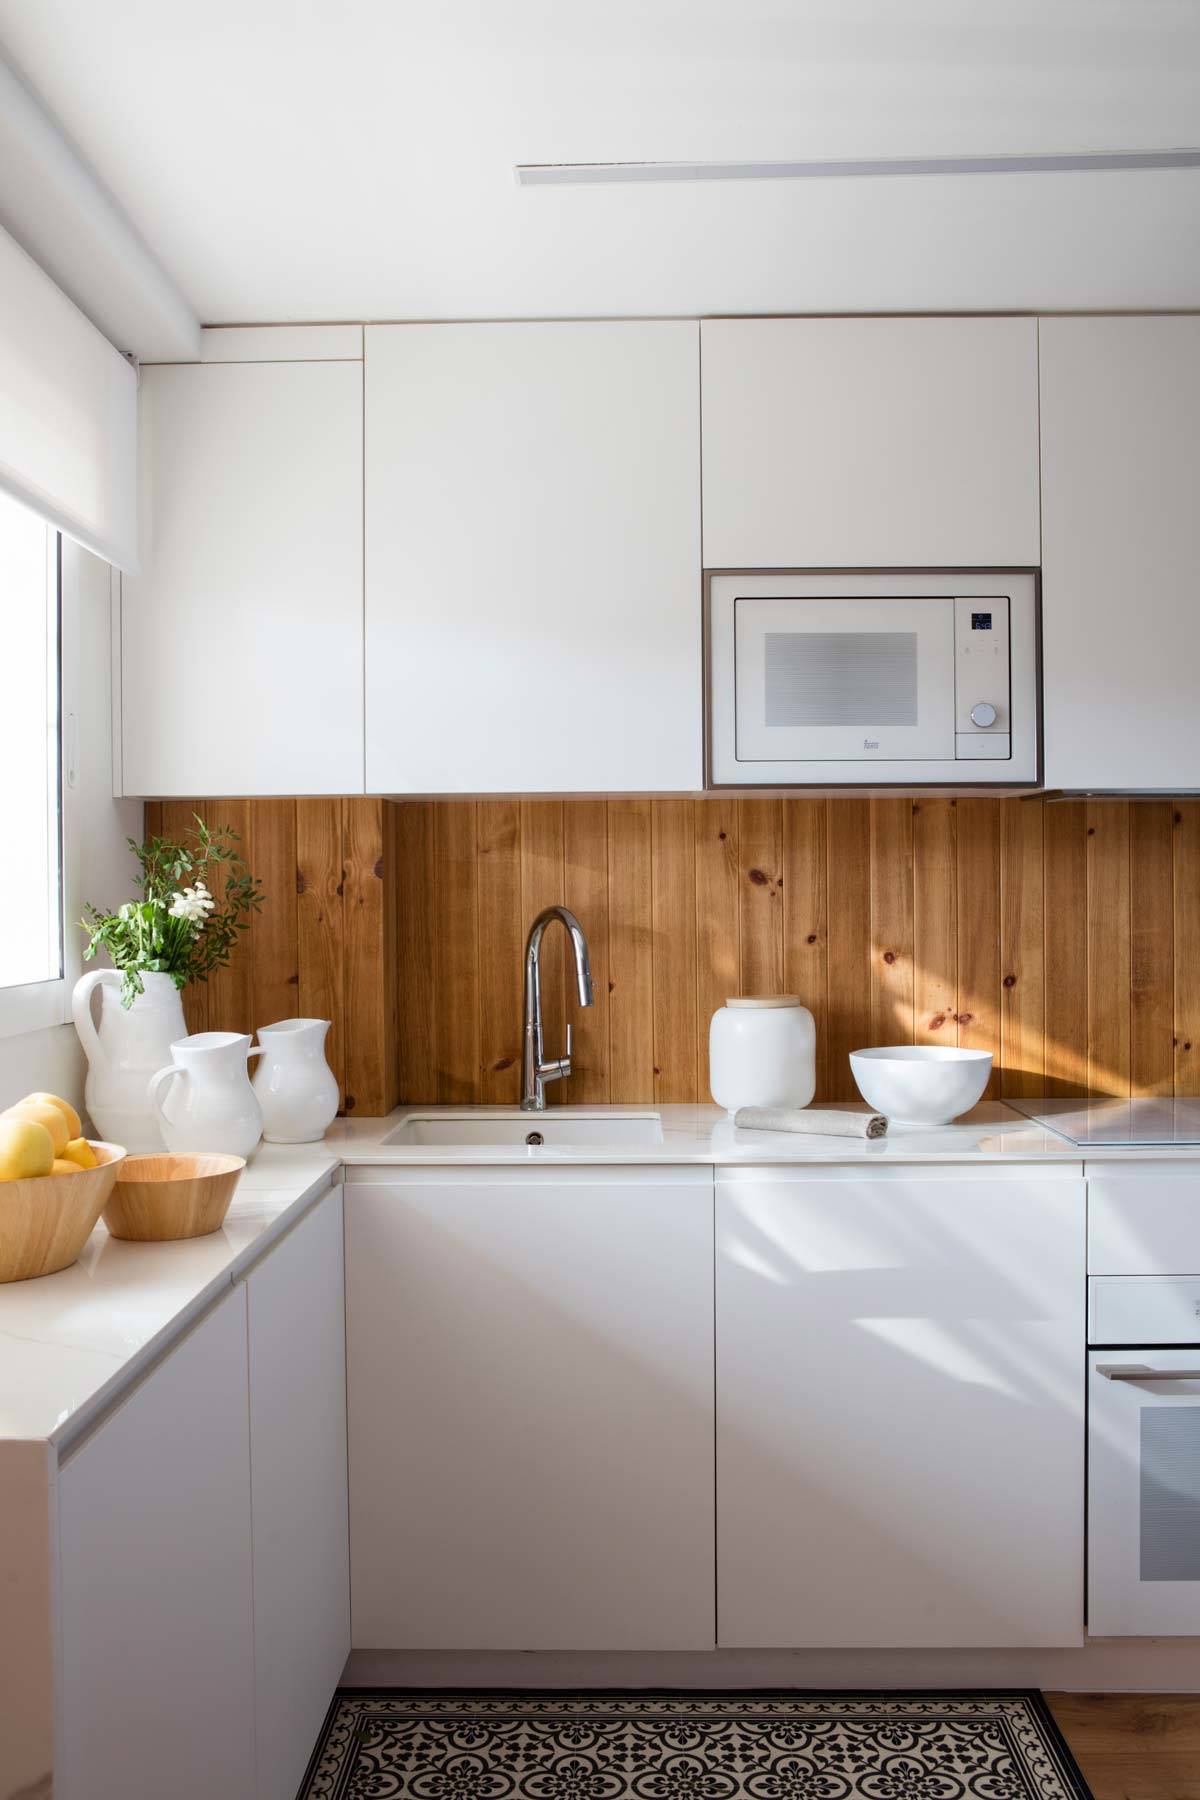 Cómo decorar una cocina moderna blanca pequeña 